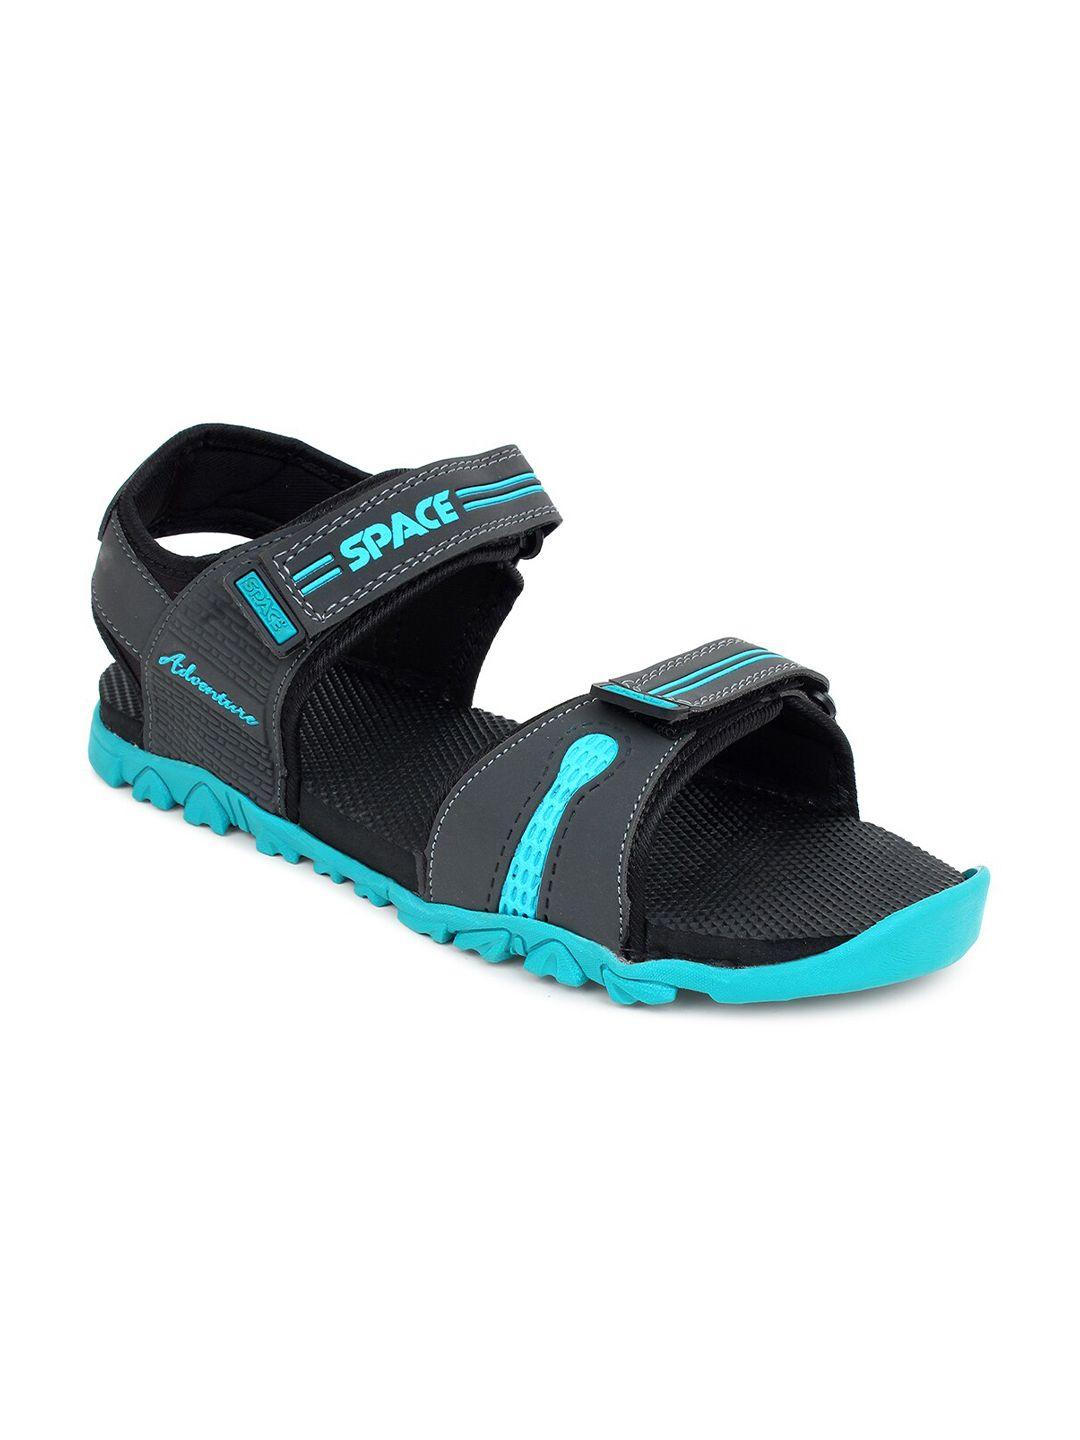 space men grey & blue comfort sandals